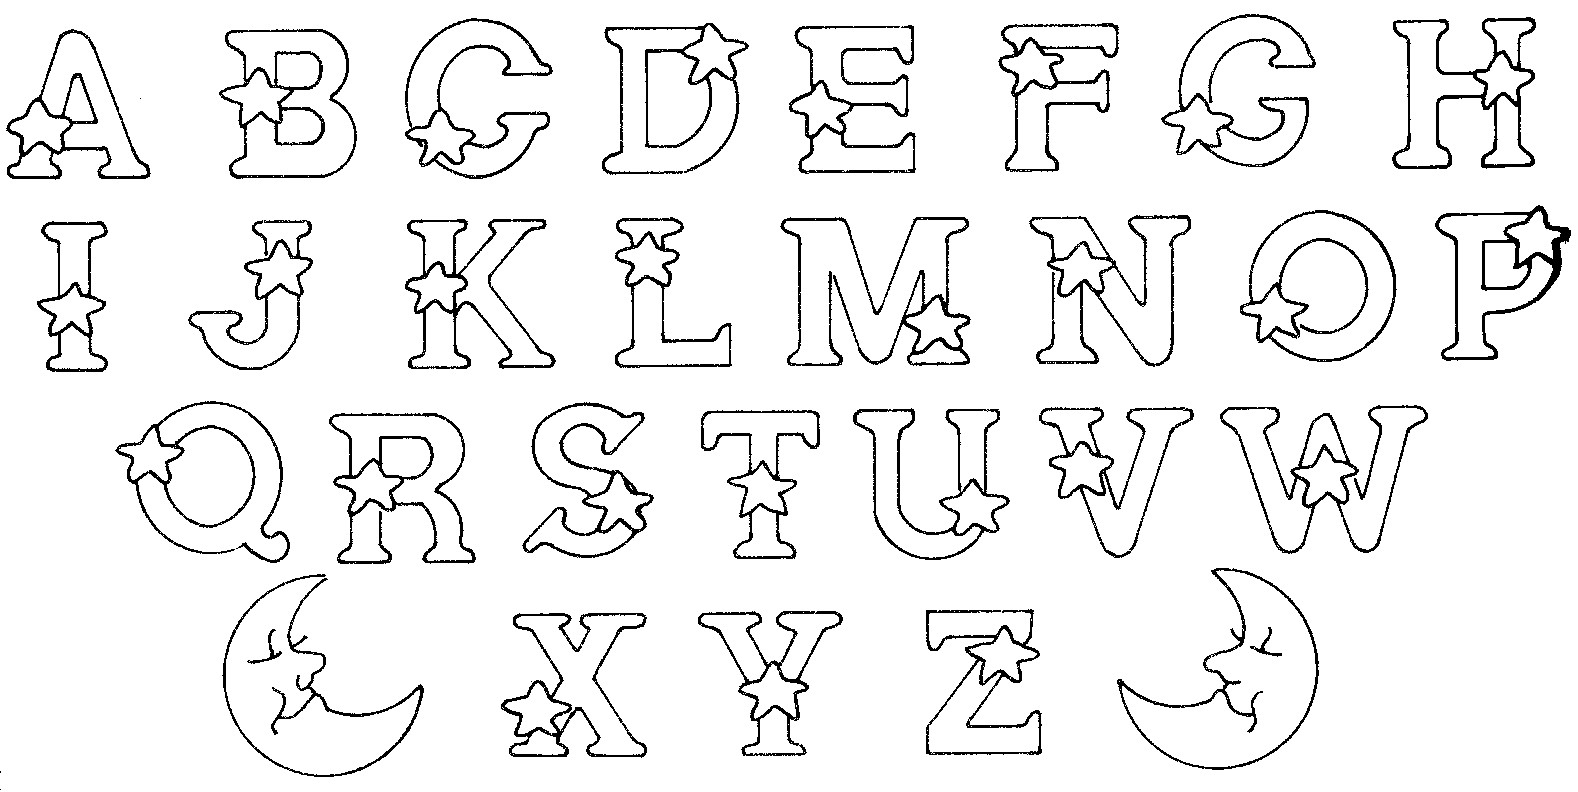 Coloriage Alphabet - Coloriages Alphabet Et Lettres intérieur Lettres Enluminées À Imprimer